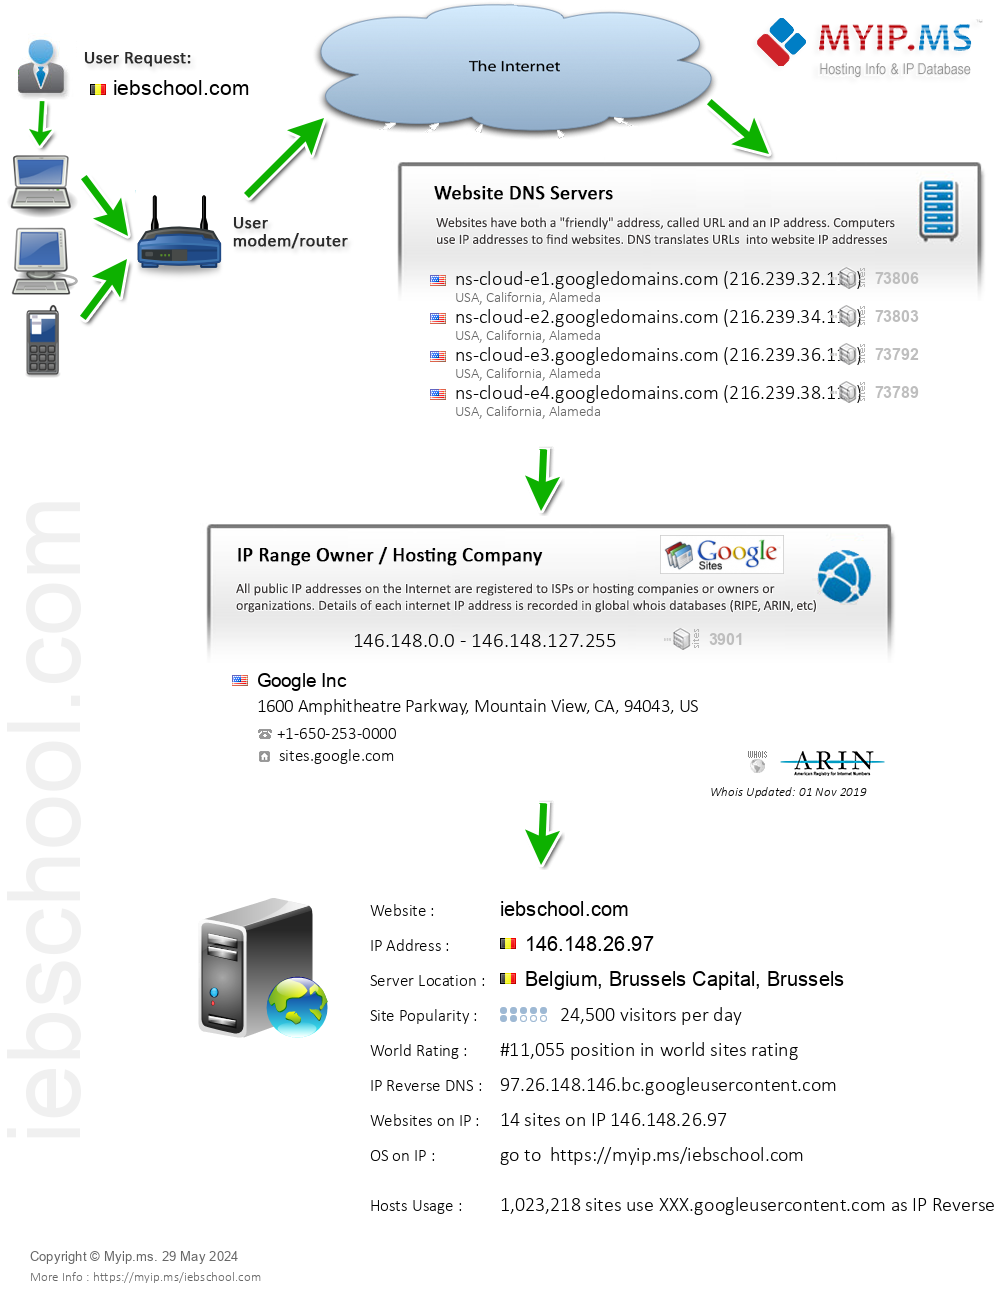 Iebschool.com - Website Hosting Visual IP Diagram